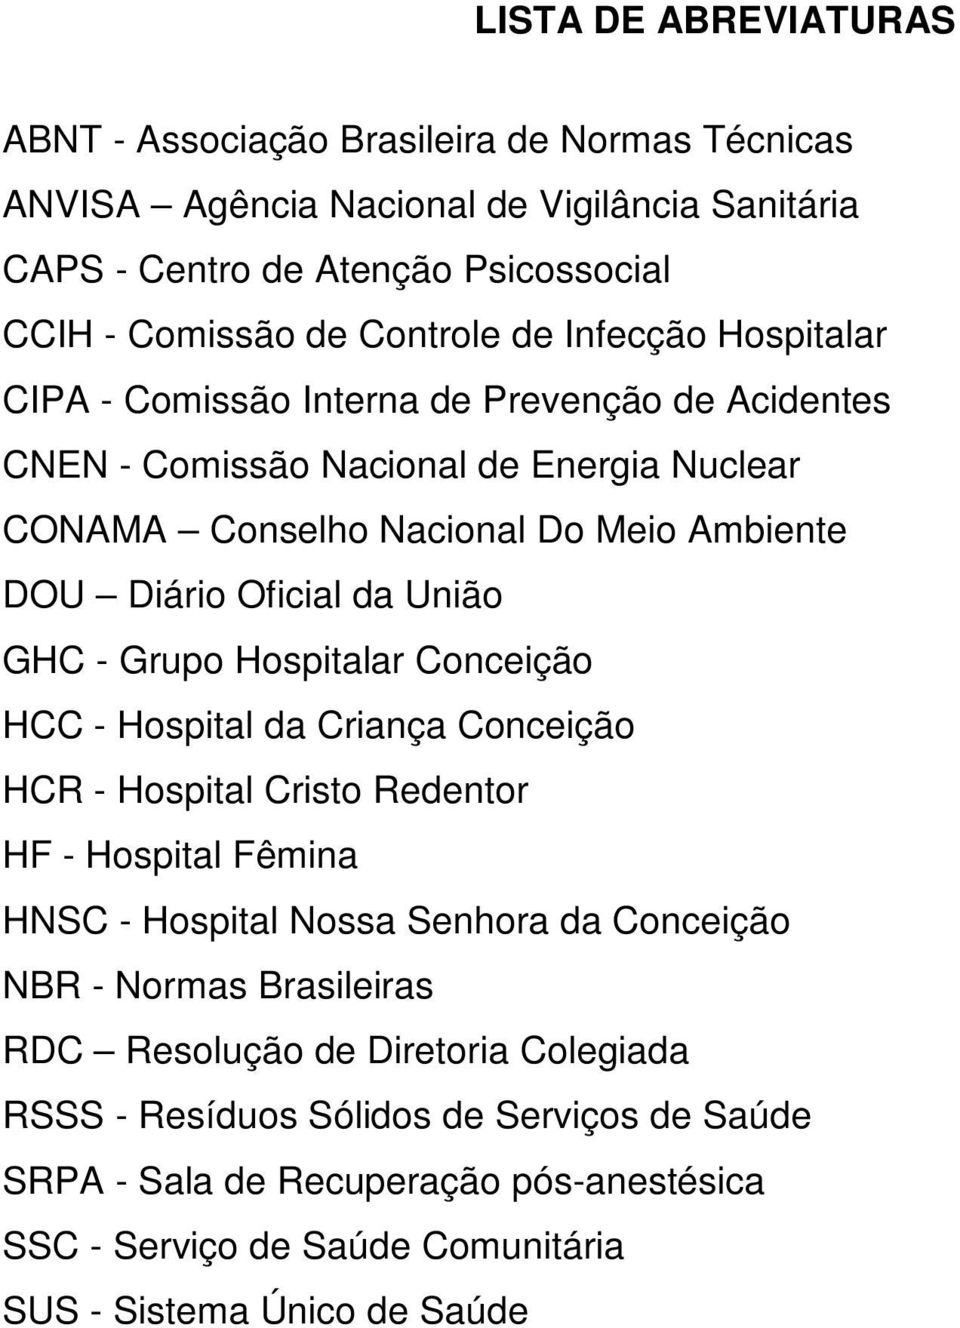 GHC - Grupo Hospitalar Conceição HCC - Hospital da Criança Conceição HCR - Hospital Cristo Redentor HF - Hospital Fêmina HNSC - Hospital Nossa Senhora da Conceição NBR - Normas